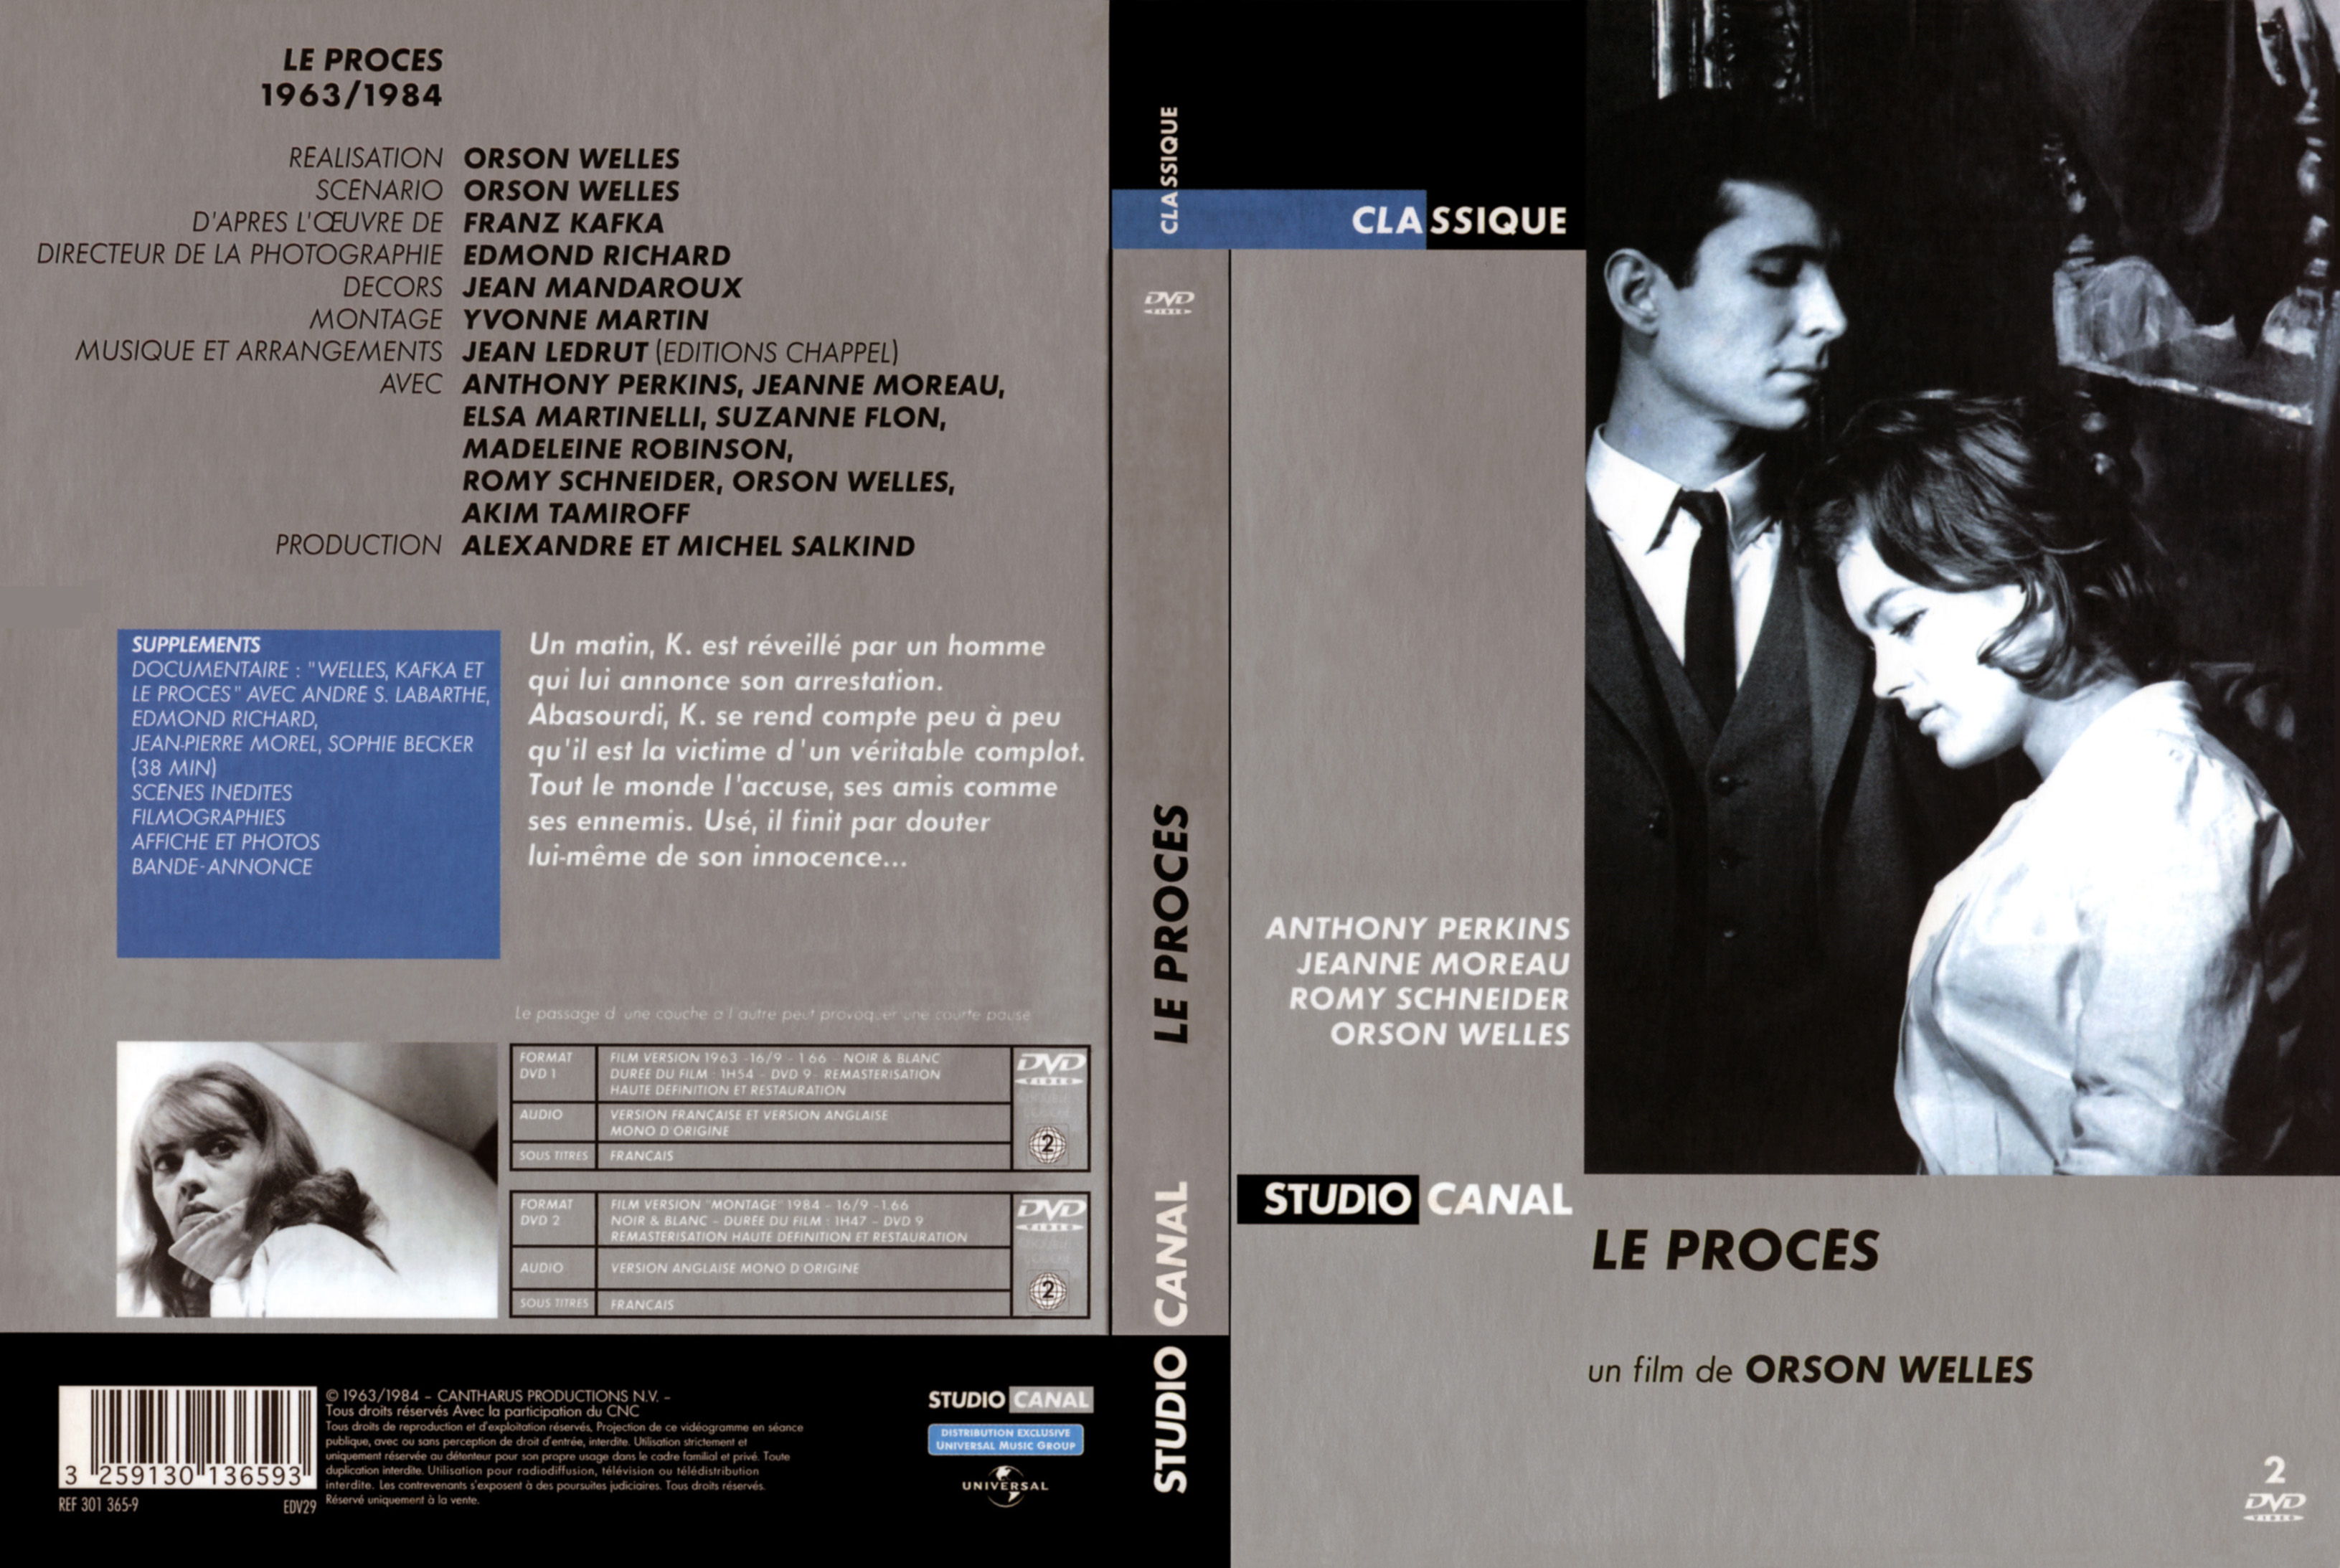 Jaquette DVD Le proces (1963)